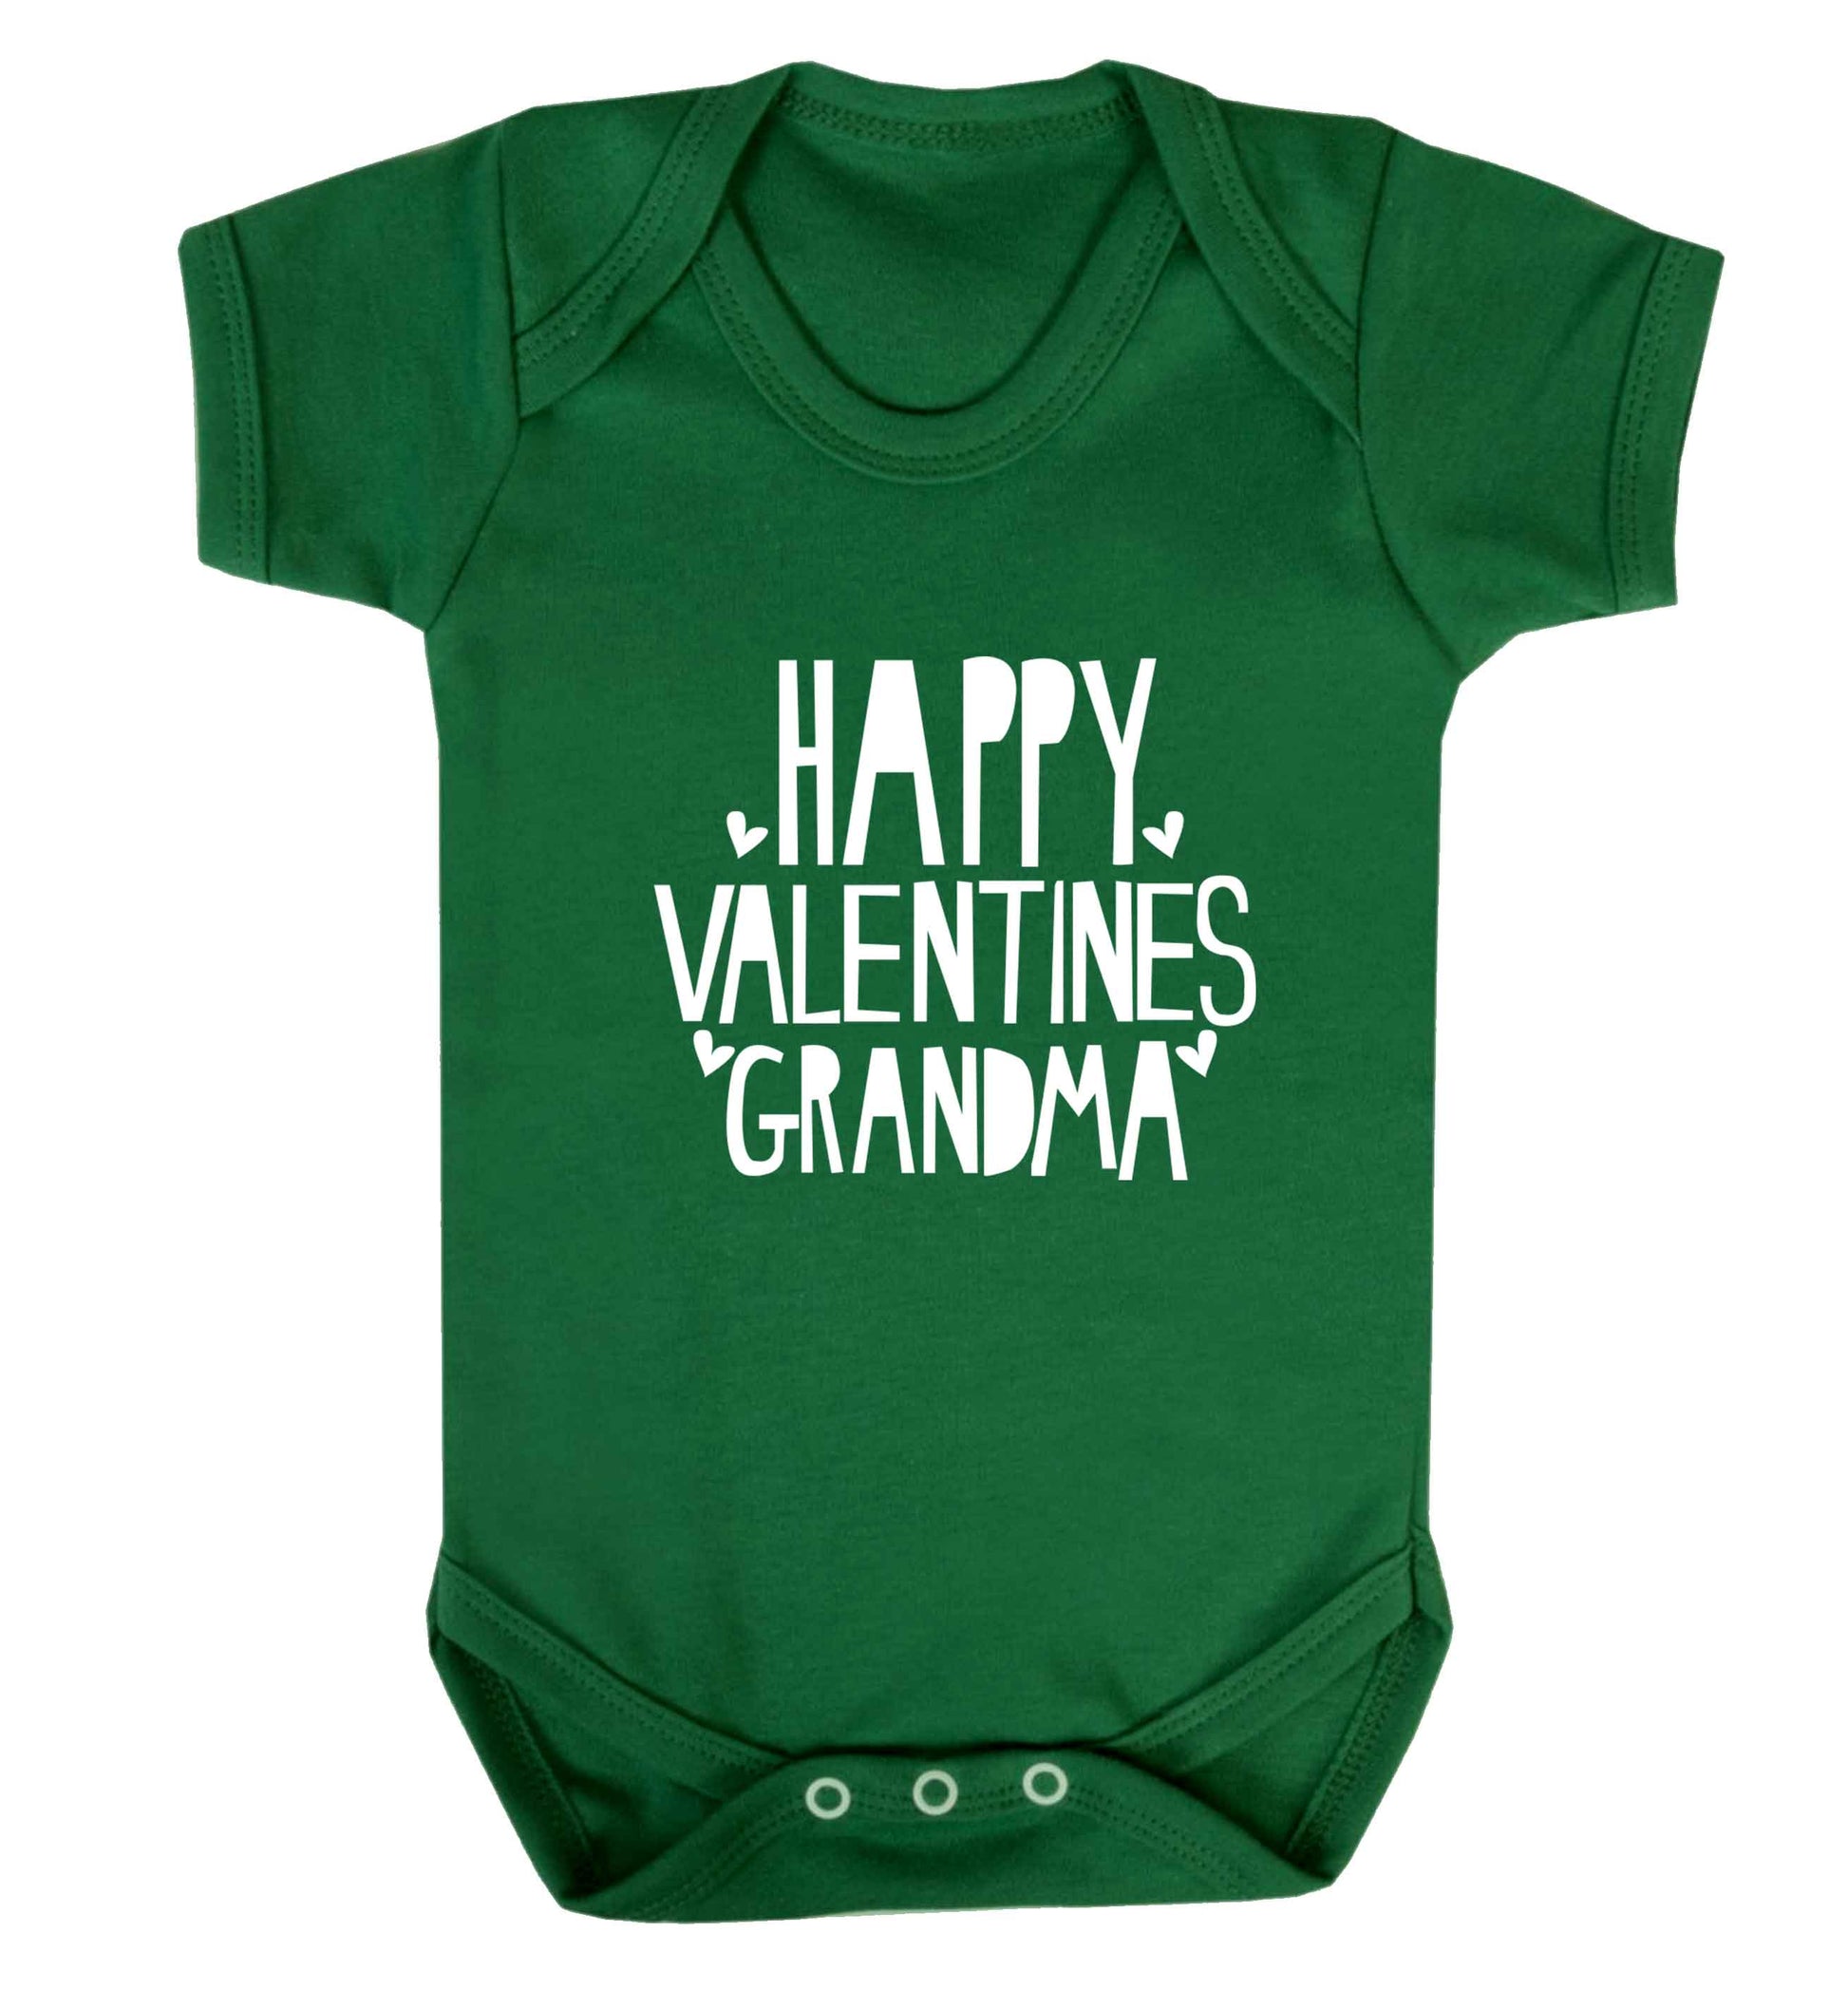 Happy valentines grandma baby vest green 18-24 months